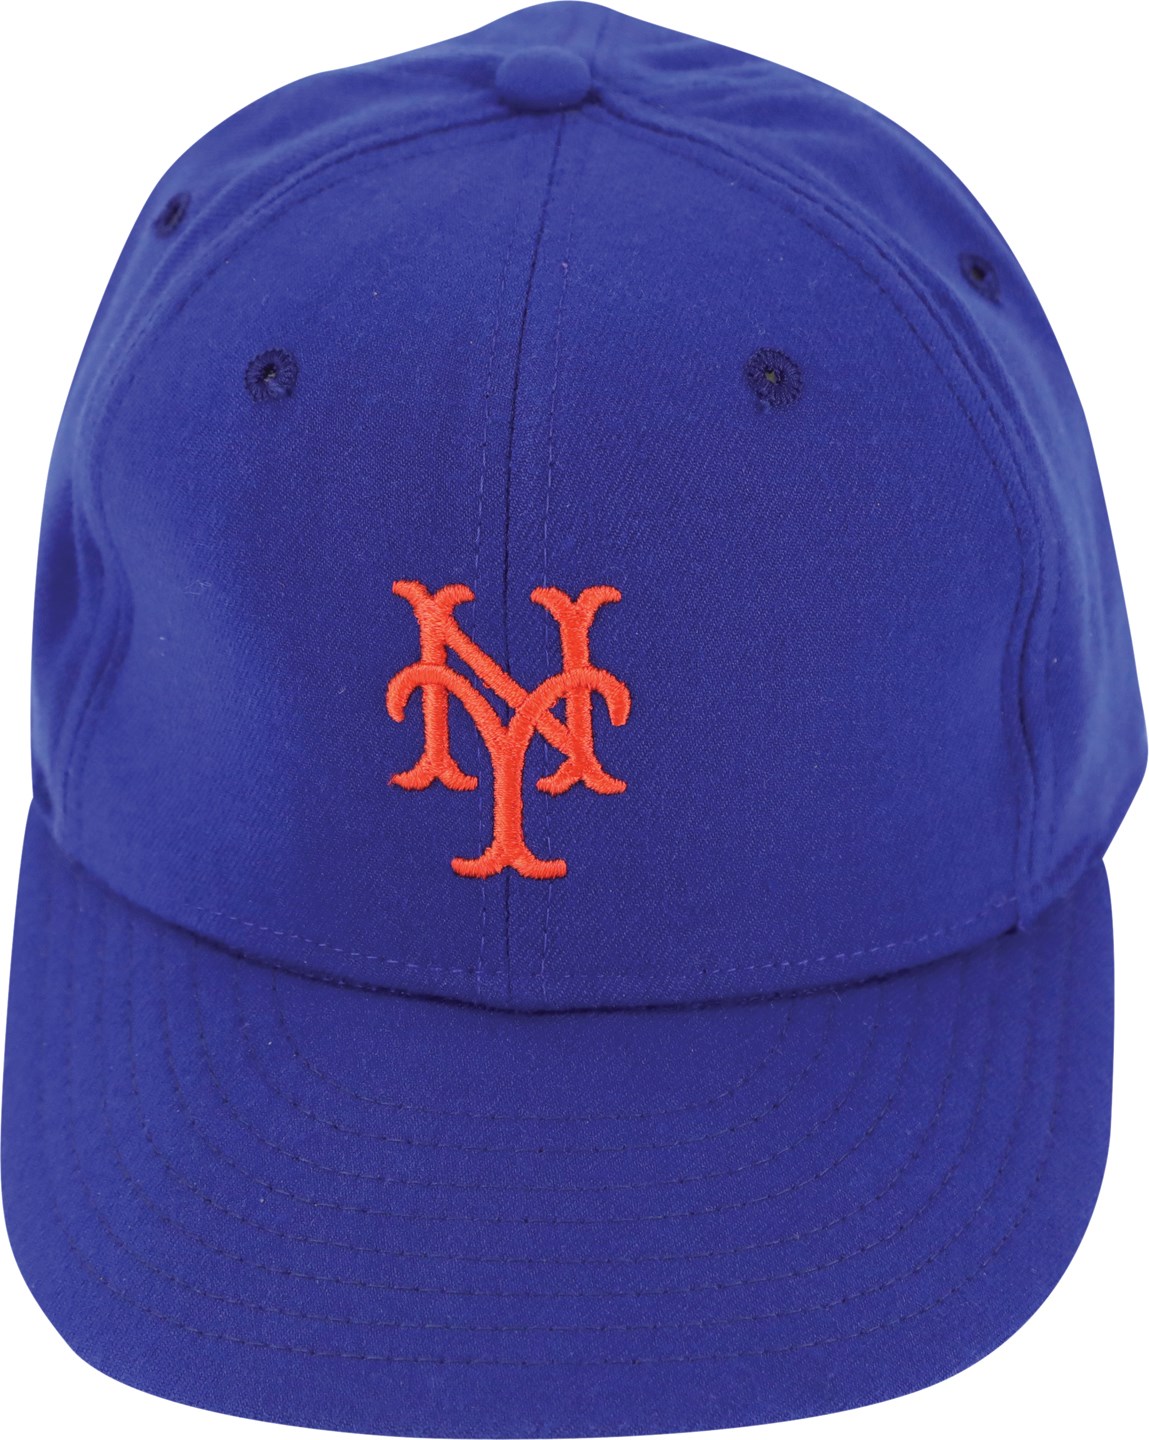 Baseball Equipment - 1983 Tom Seaver New York Mets Game Used Hat